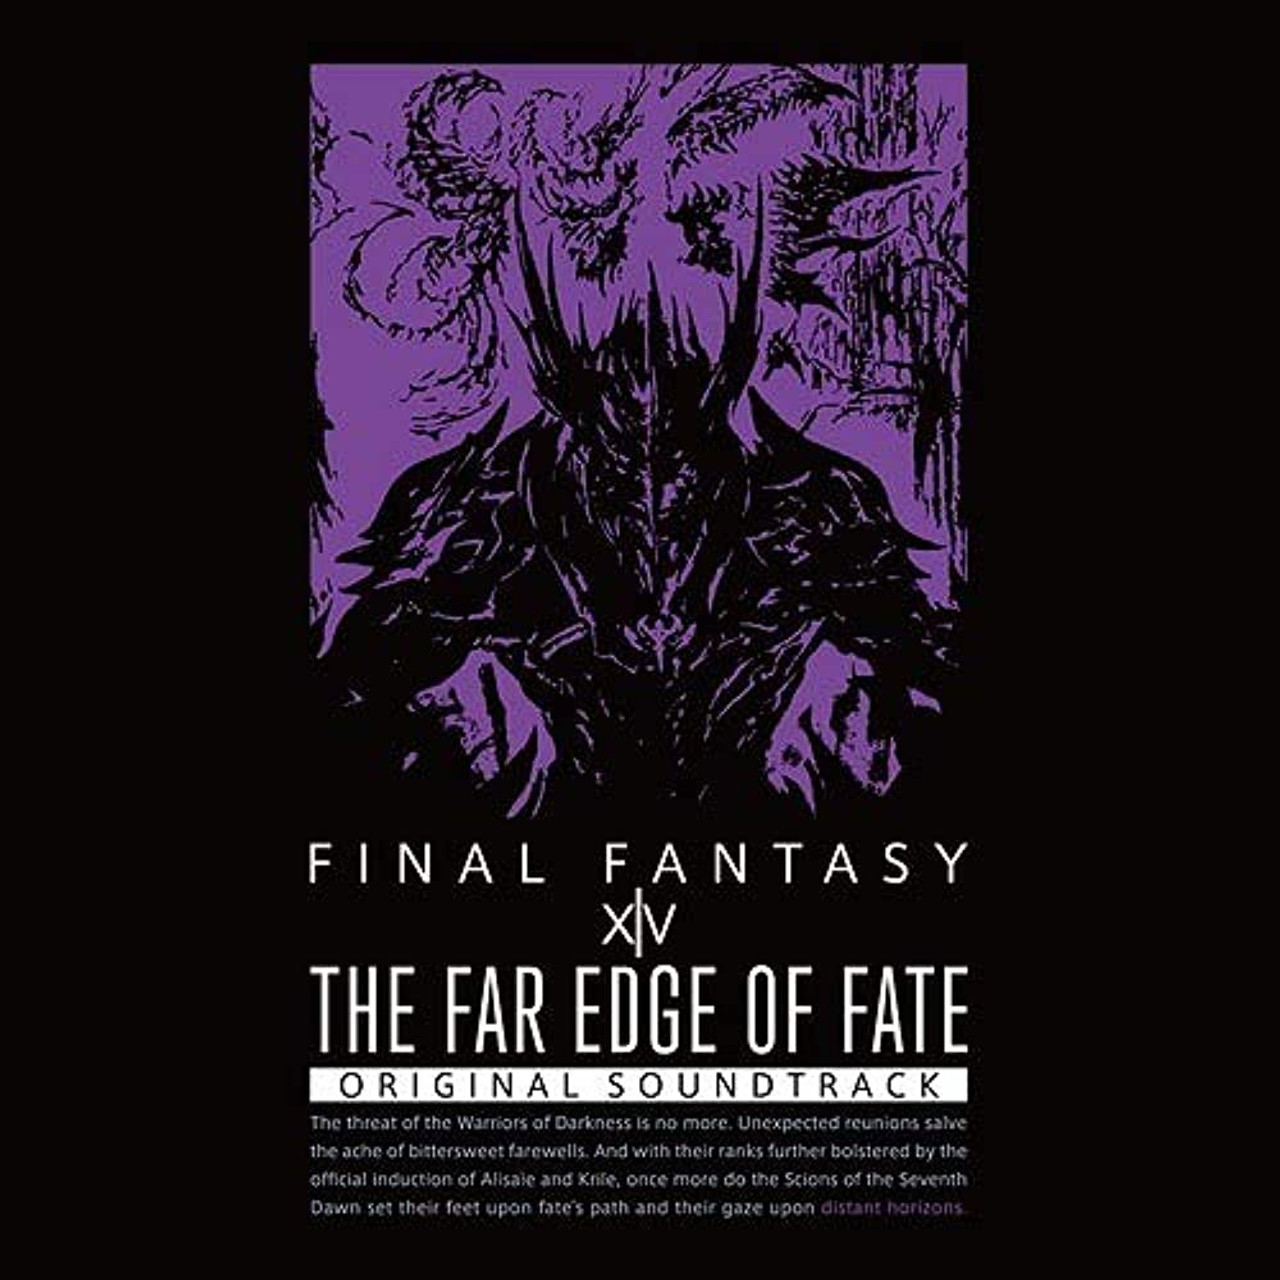 EDGE　RAY]　XIV　[BLU　SOUNDTRACK　OF　Store　THE　FANTASY　FINAL　ORIGINAL　FAR　ENIX　FATE:　SQUARE